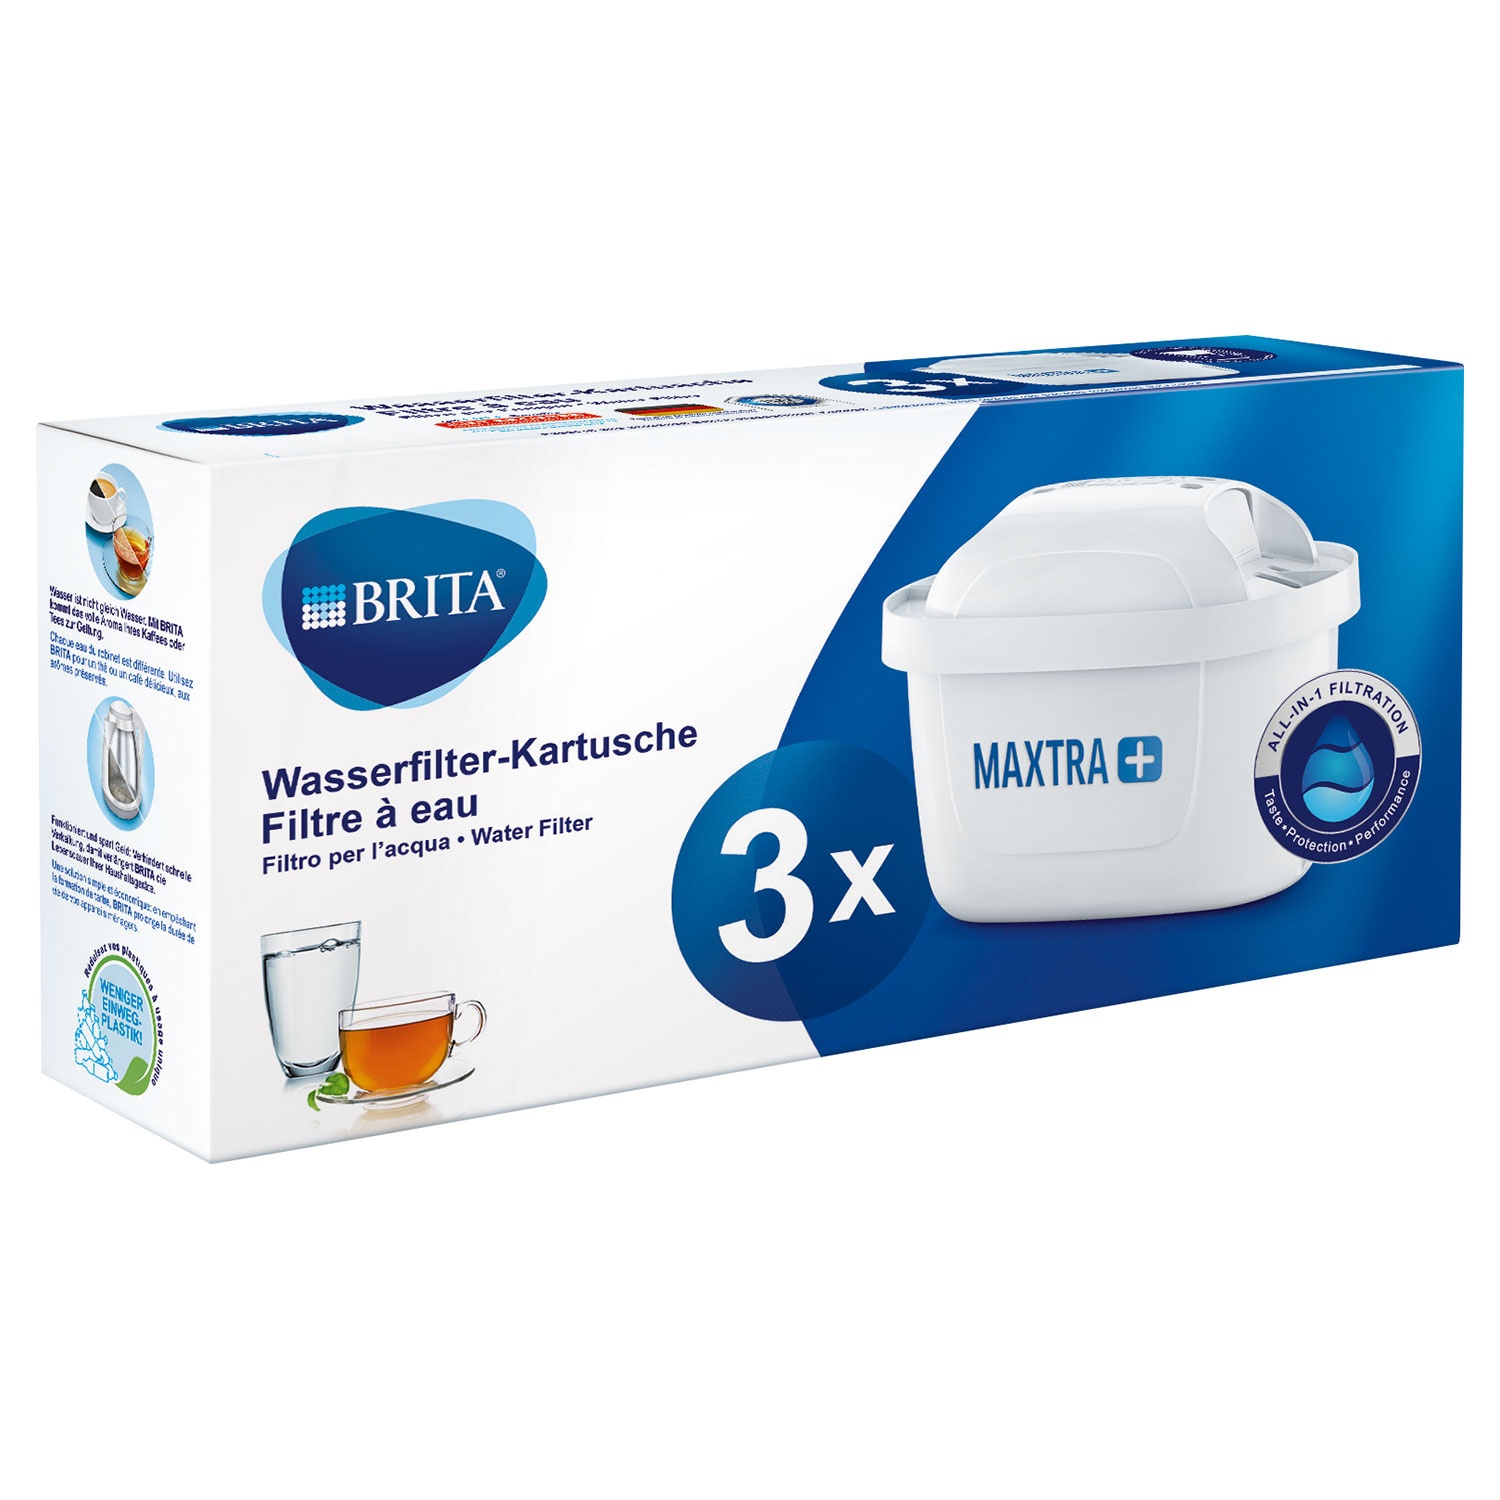 BRITA® Wasserfilter-Kartusche MAXTRA+